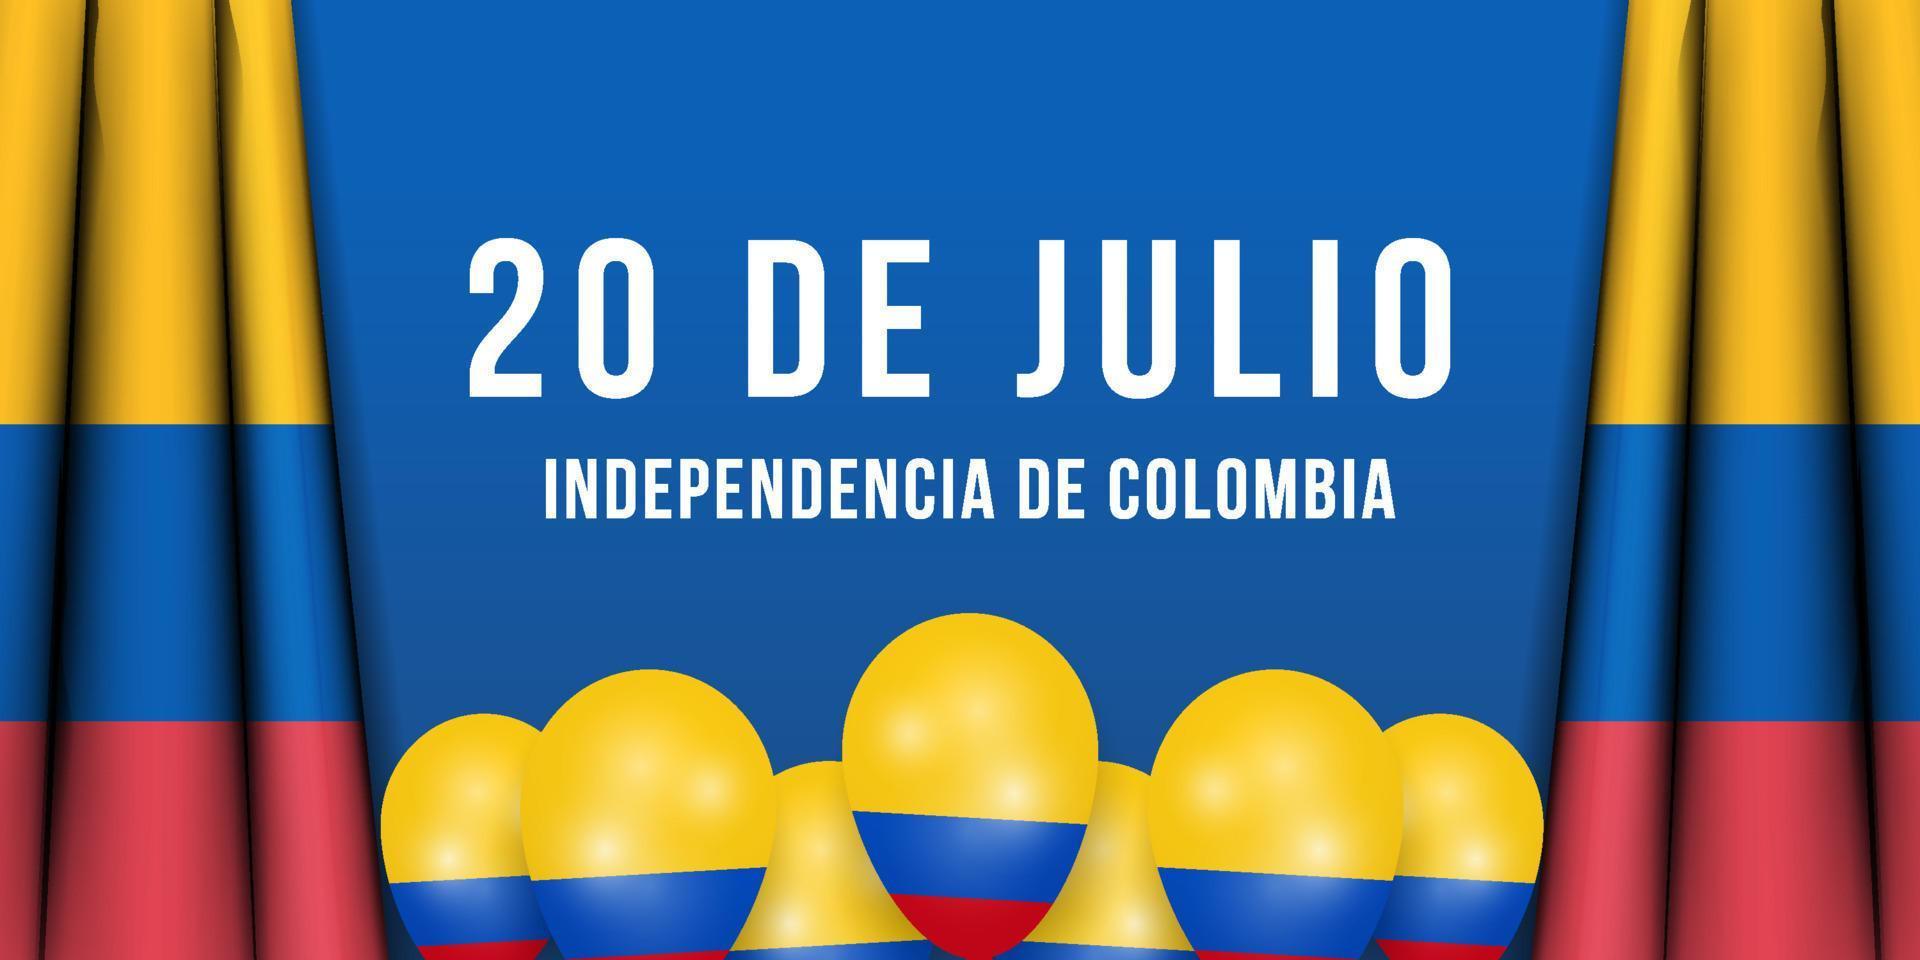 20 juillet illustration de l'indépendance de la colombie avec drapeau colombien réaliste et ballon vecteur